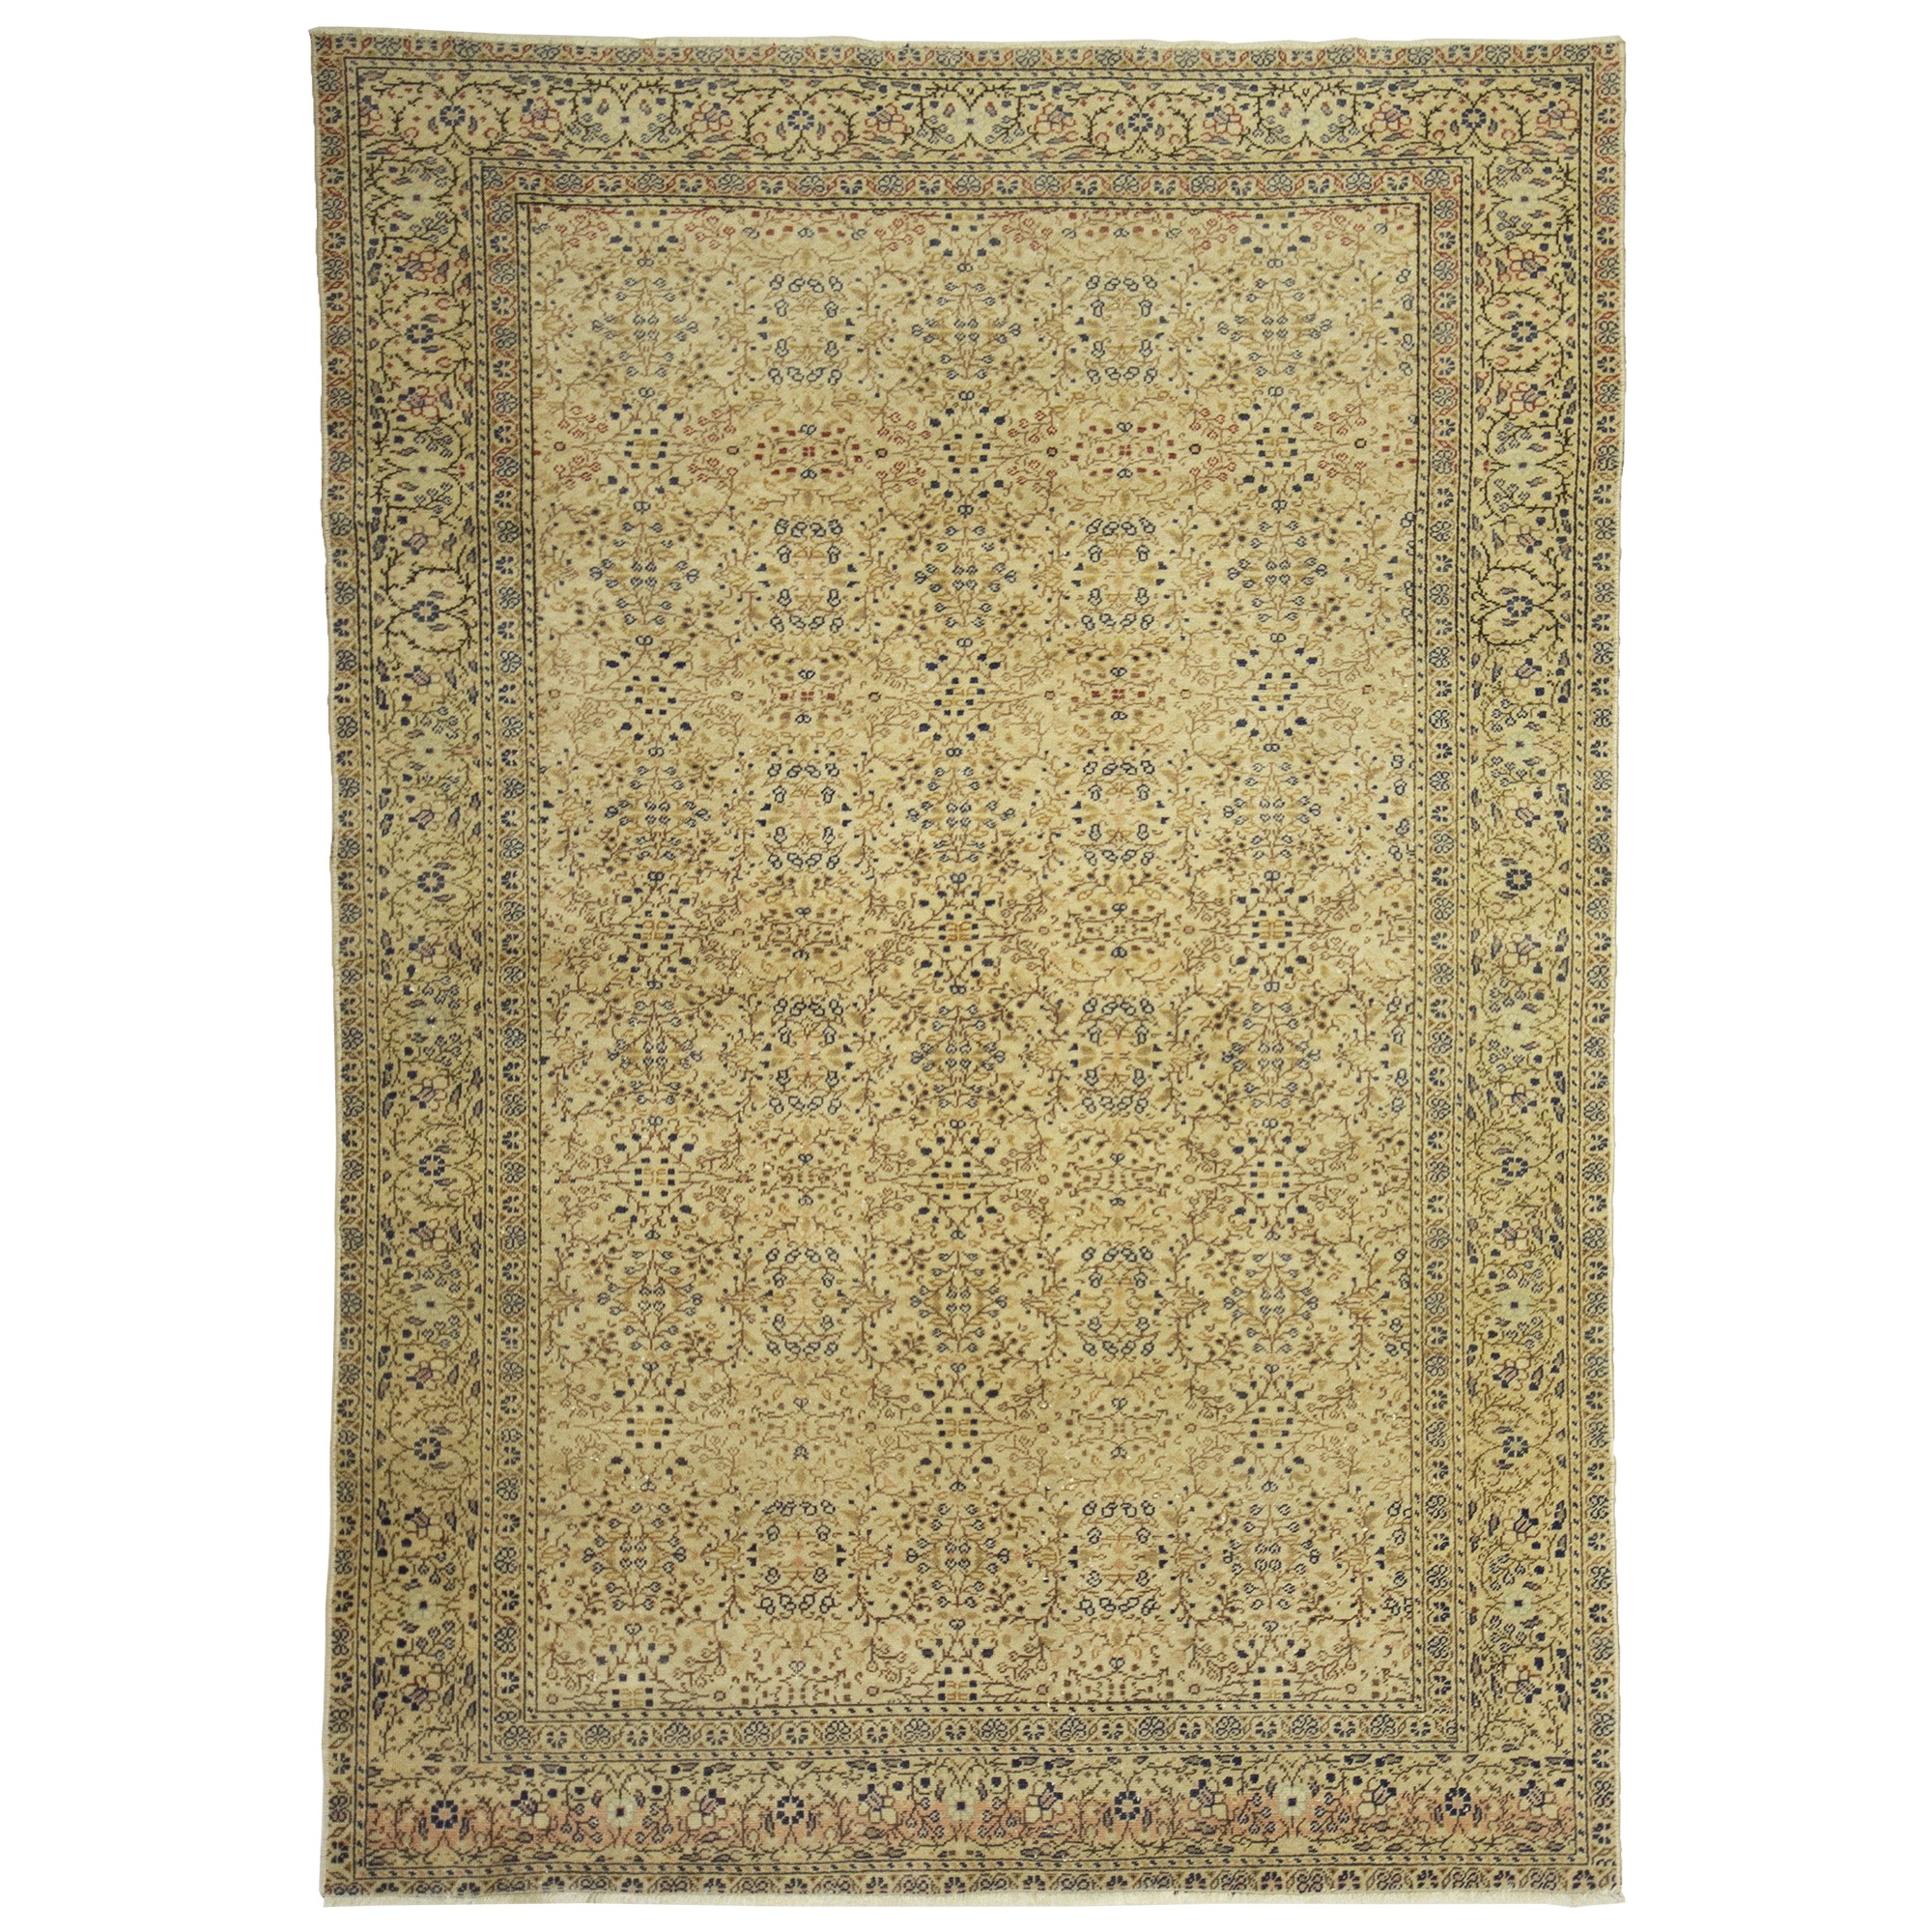 3523  144,208 - Turkish Carpet Rug 